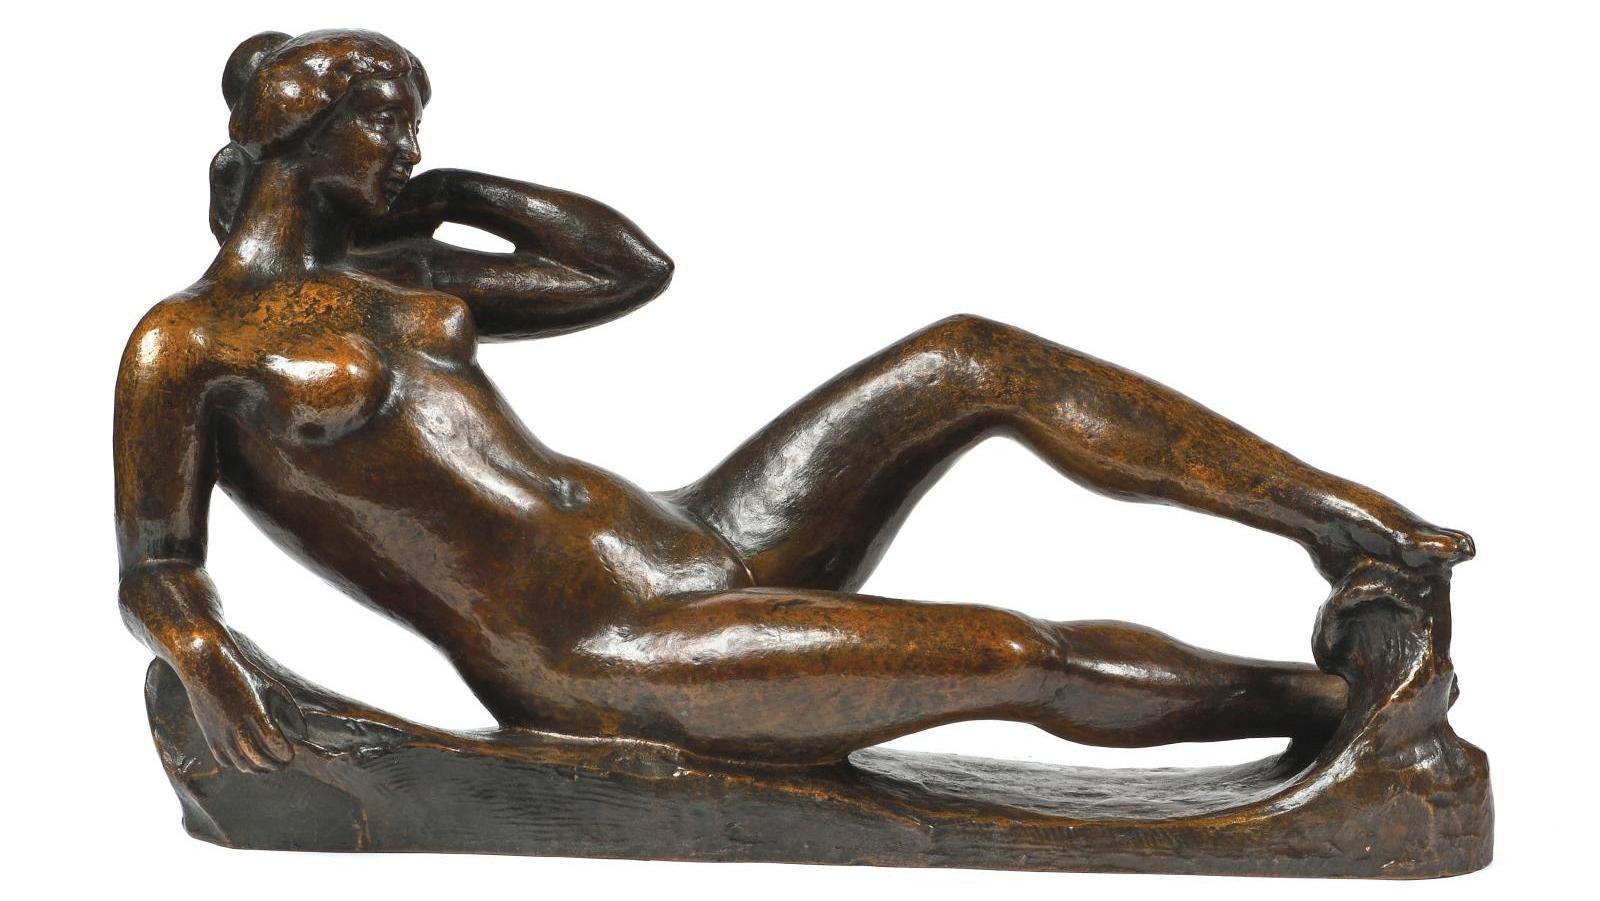 Aristide Maillol (1861-1944), Étude pour le monument à Paul Cézanne, 1912-1925, bronze... From Maillol to Wine, A Connoisseur's Collection